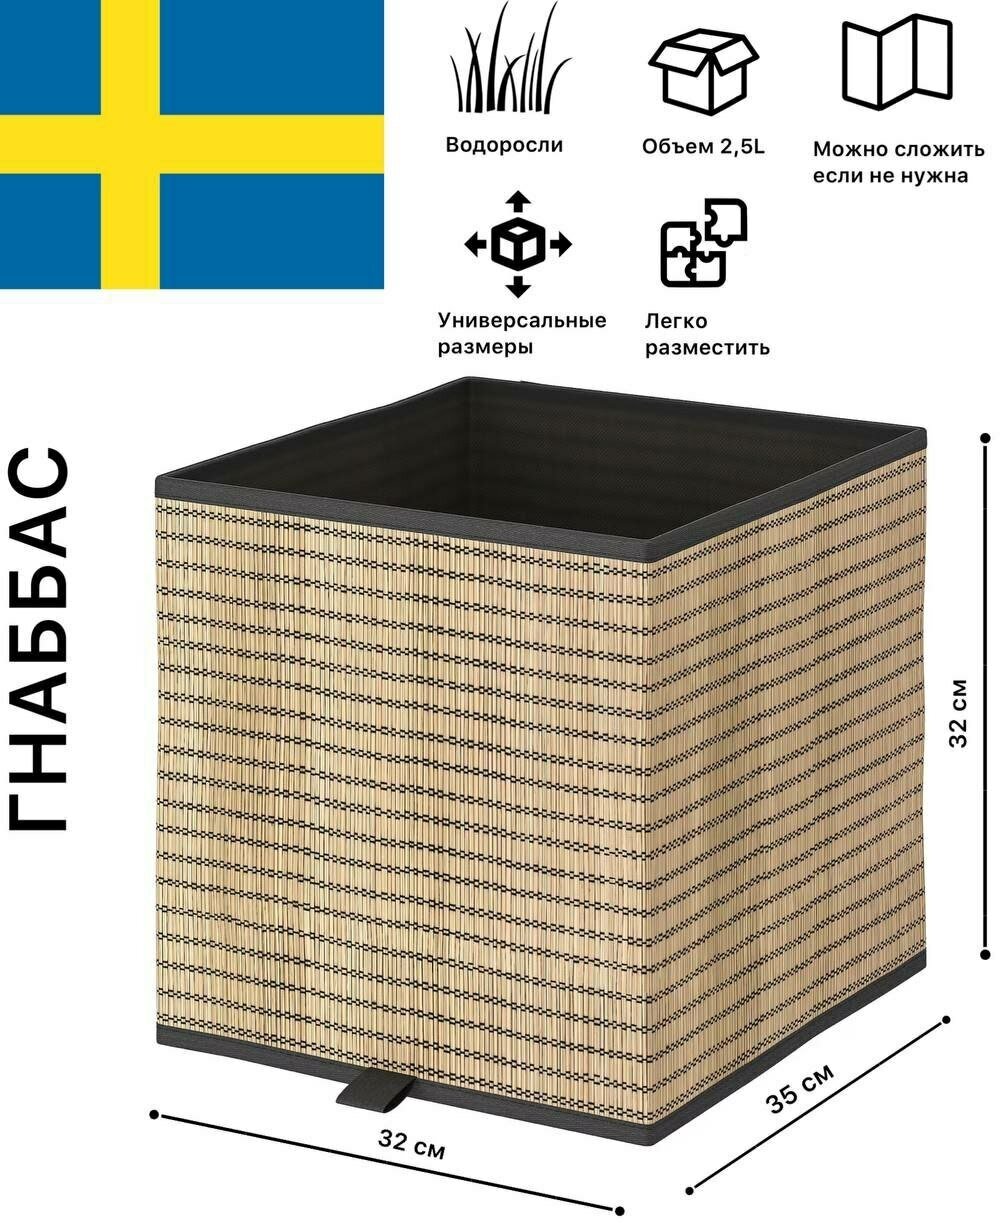 Коробка для хранения икеа Гнаббас, 32x35x32 см